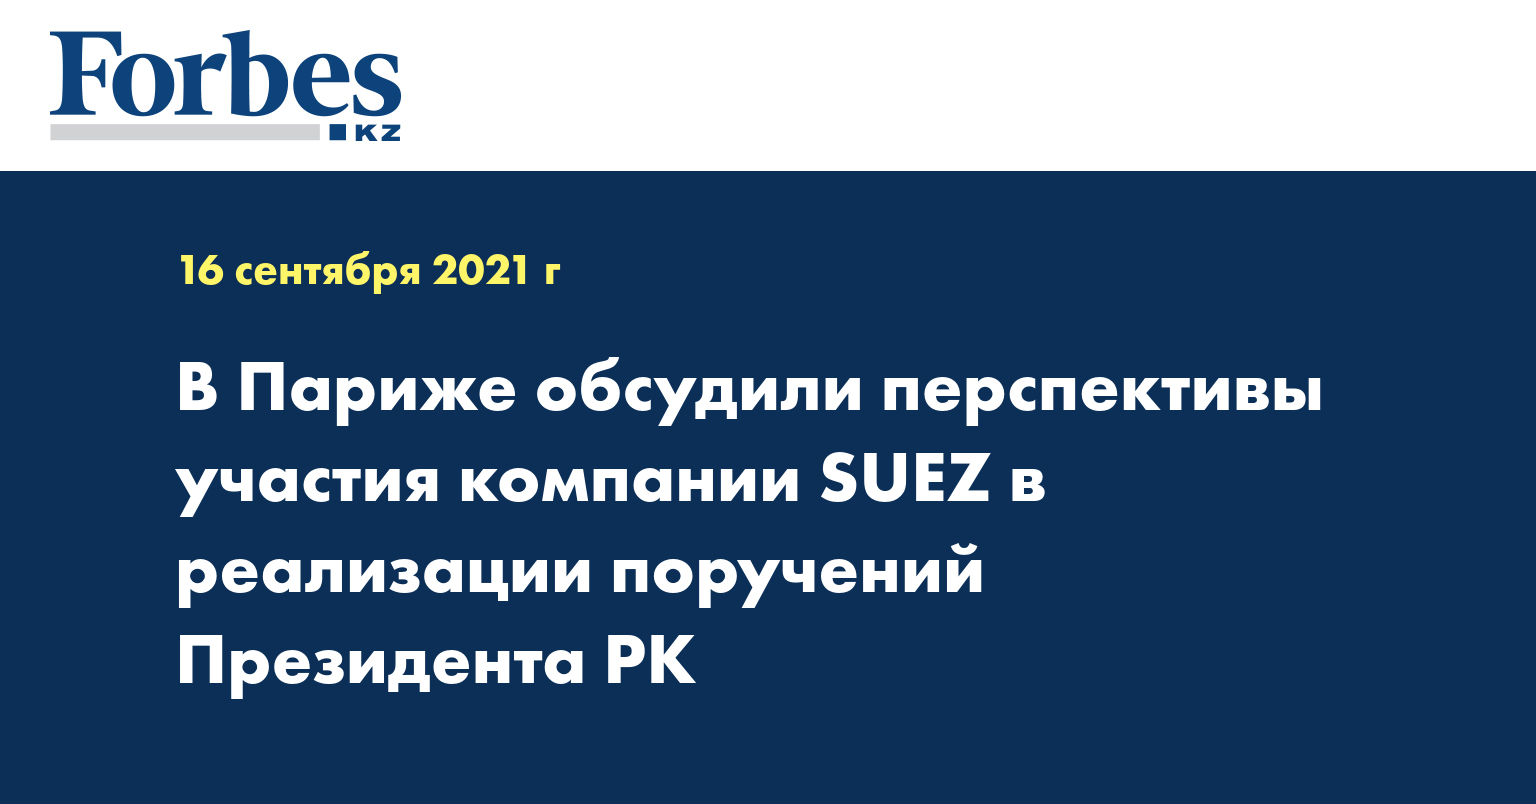 В Париже обсудили перспективы участия компании SUEZ в реализации поручений Президента РК